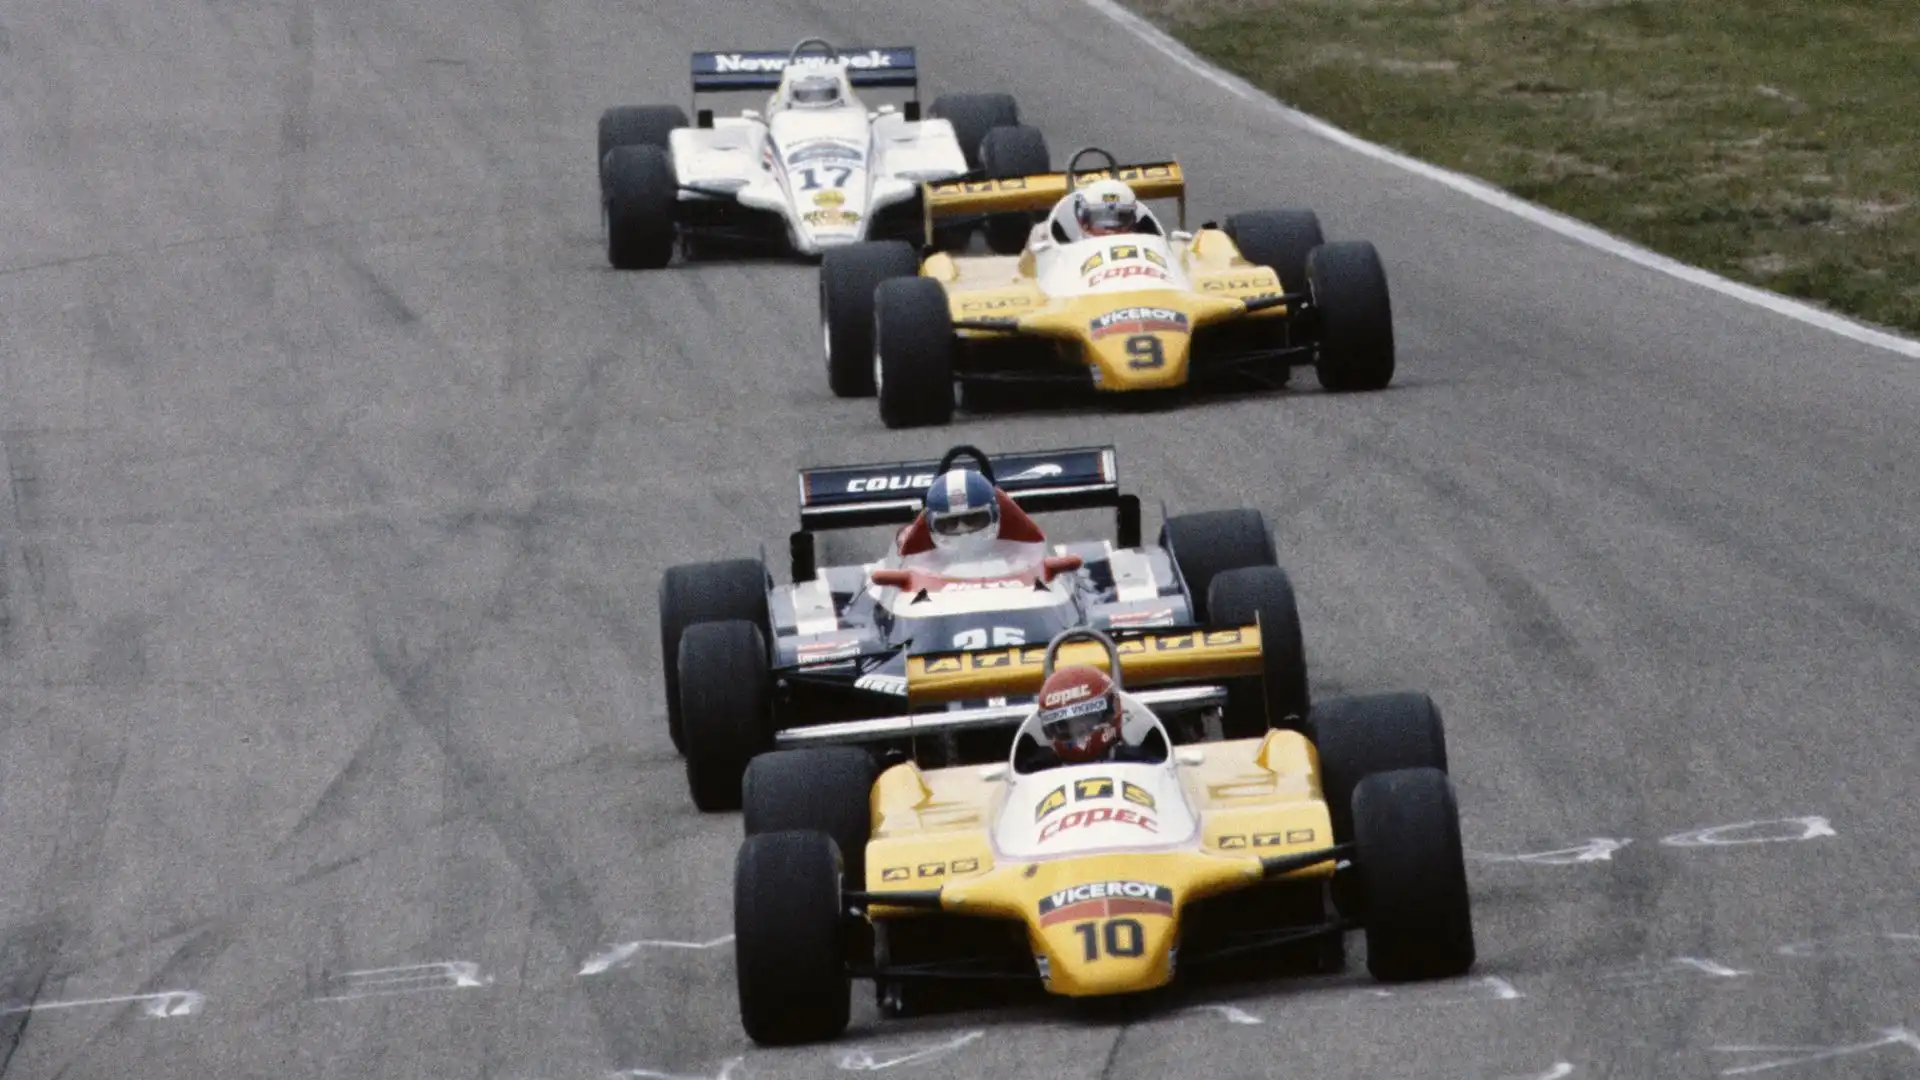 La Toleman fu attiva in Formula 1 dal 1981 al 1985